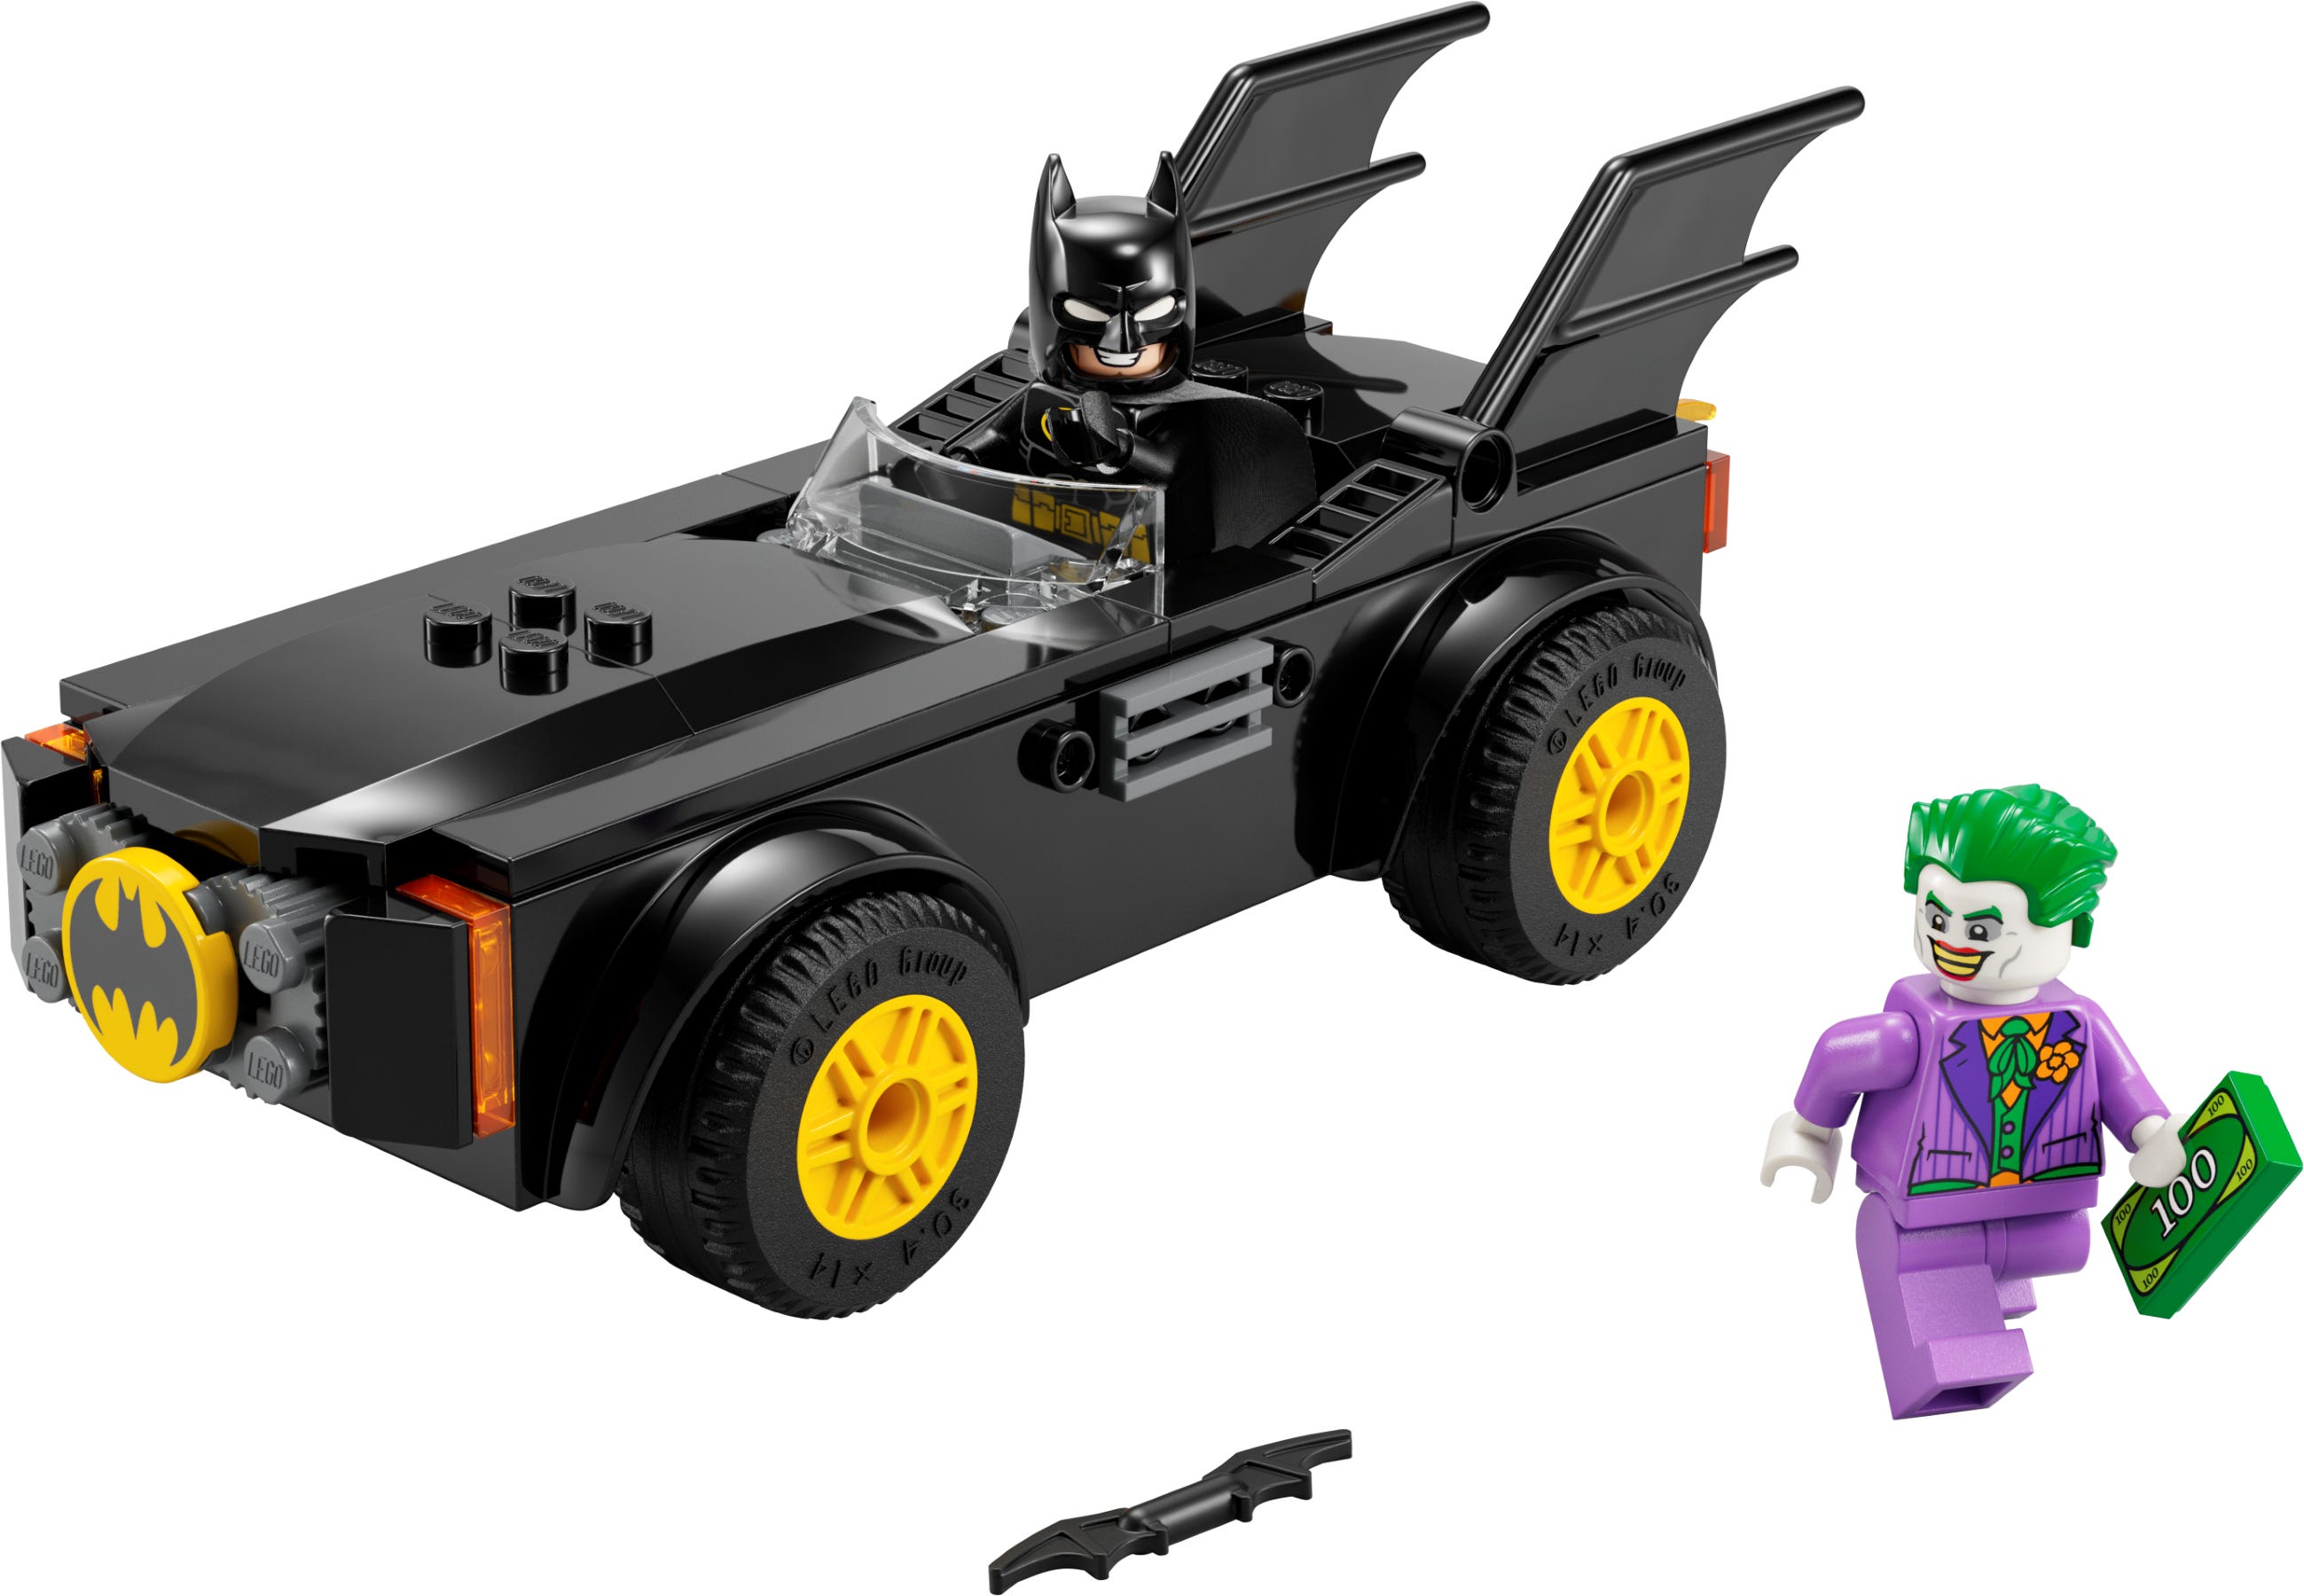 Batmobile achtervolging: Batman vs. The Joker